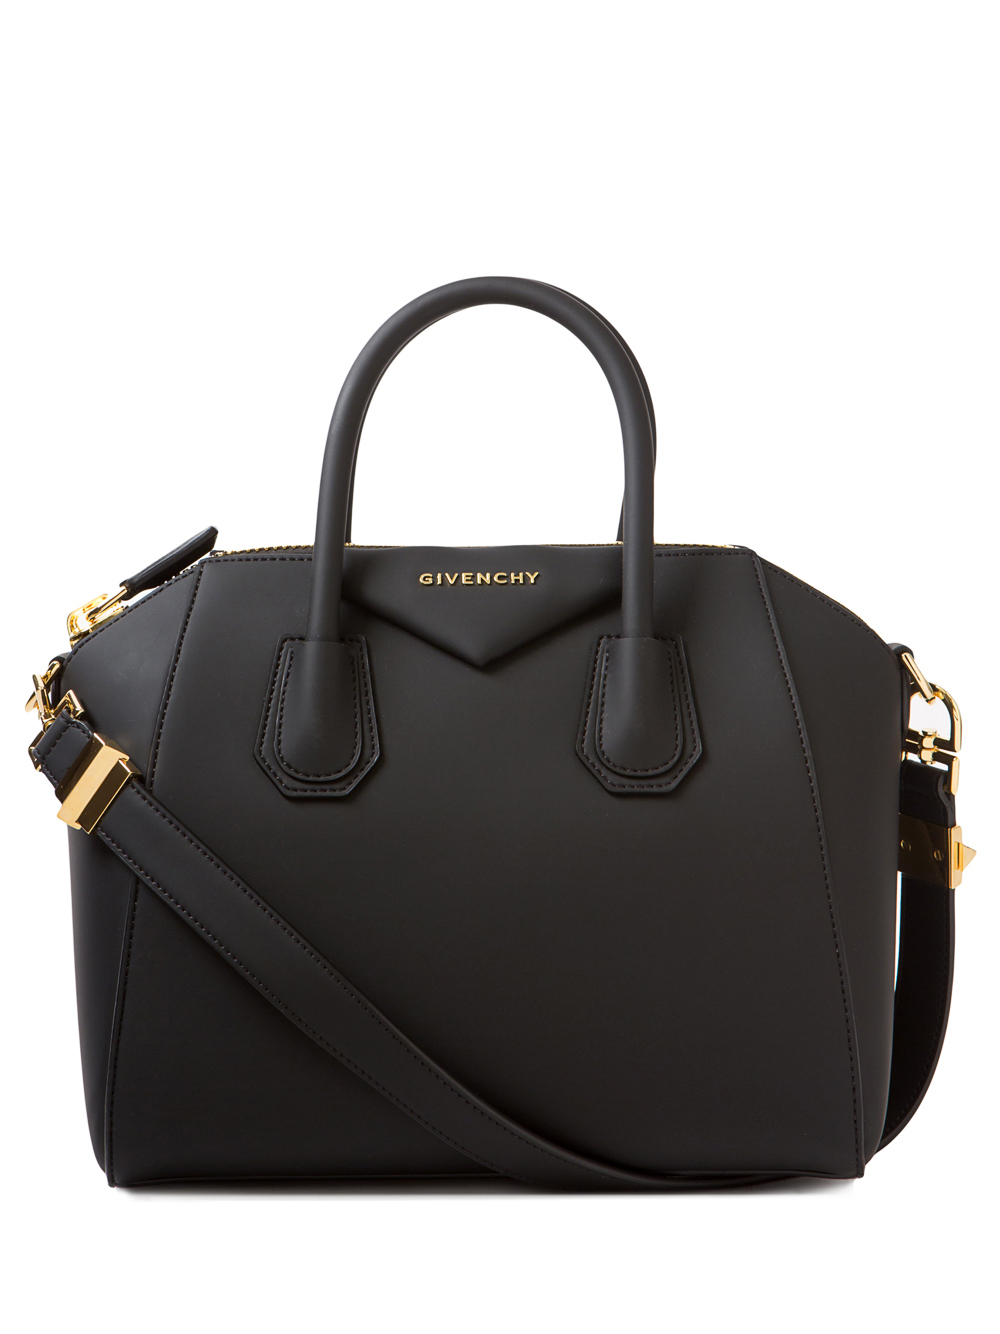 Givenchy Antigona Rubber Bag in 